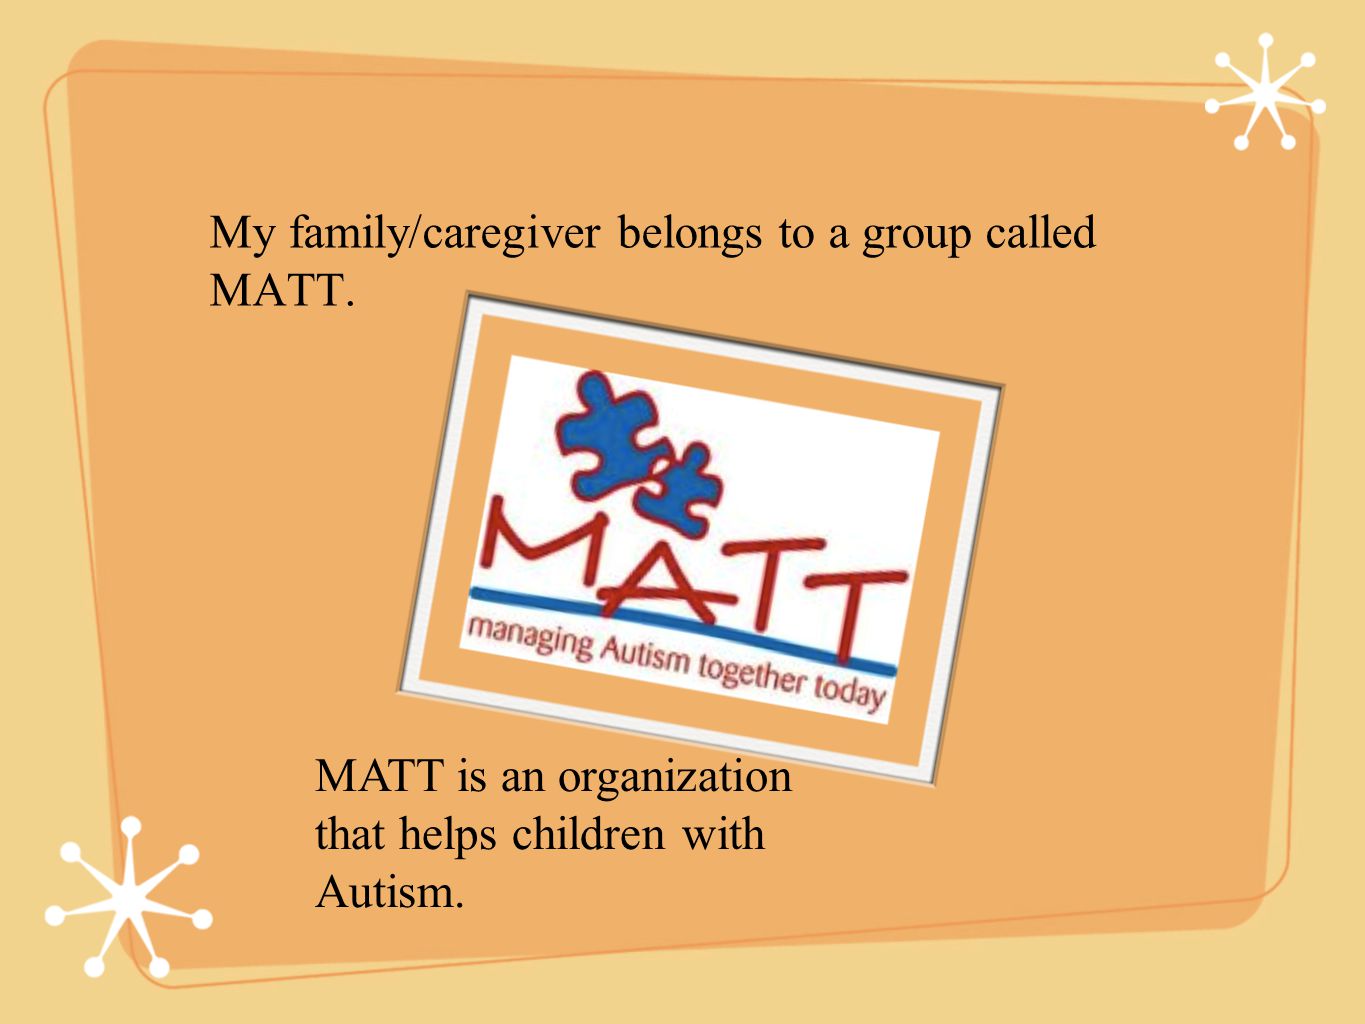 My family/caregiver belongs to a group called MATT.